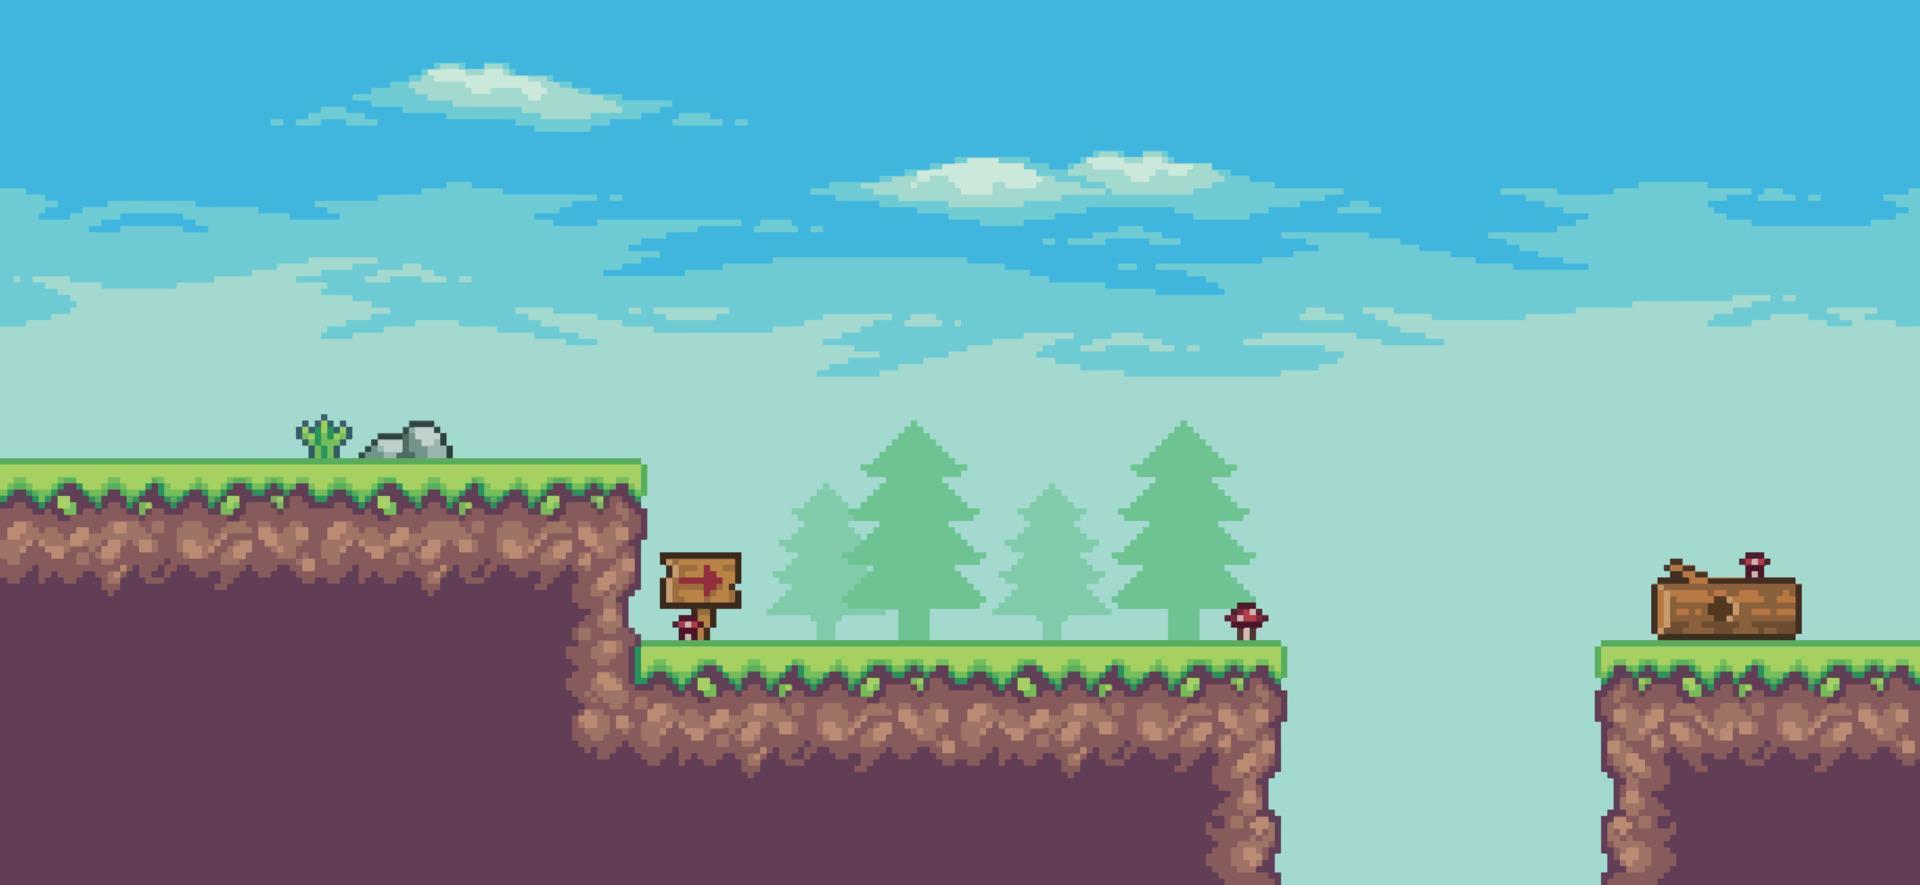 pixel art arcade game scene met bomen, stam, bord, stenen en wolken 8bit achtergrond vector